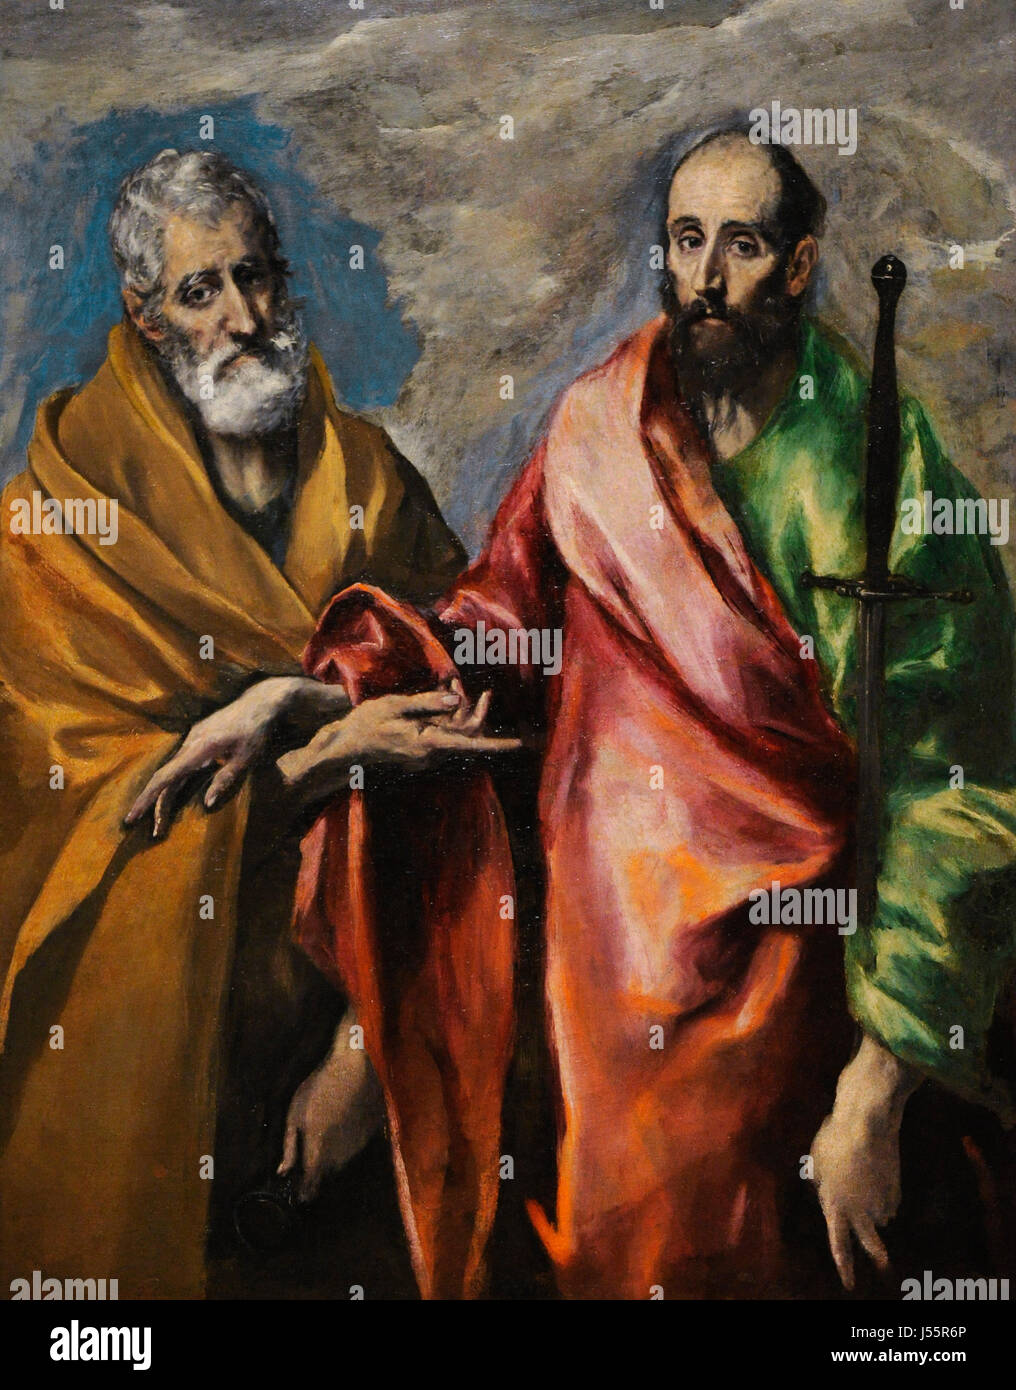 El Greco (1541-1614). Peintre de Crète. Saint Pierre et Saint Paul, 1590-1600. Musée national d'Art de Catalogne. Barcelone. La Catalogne. L'Espagne. Banque D'Images